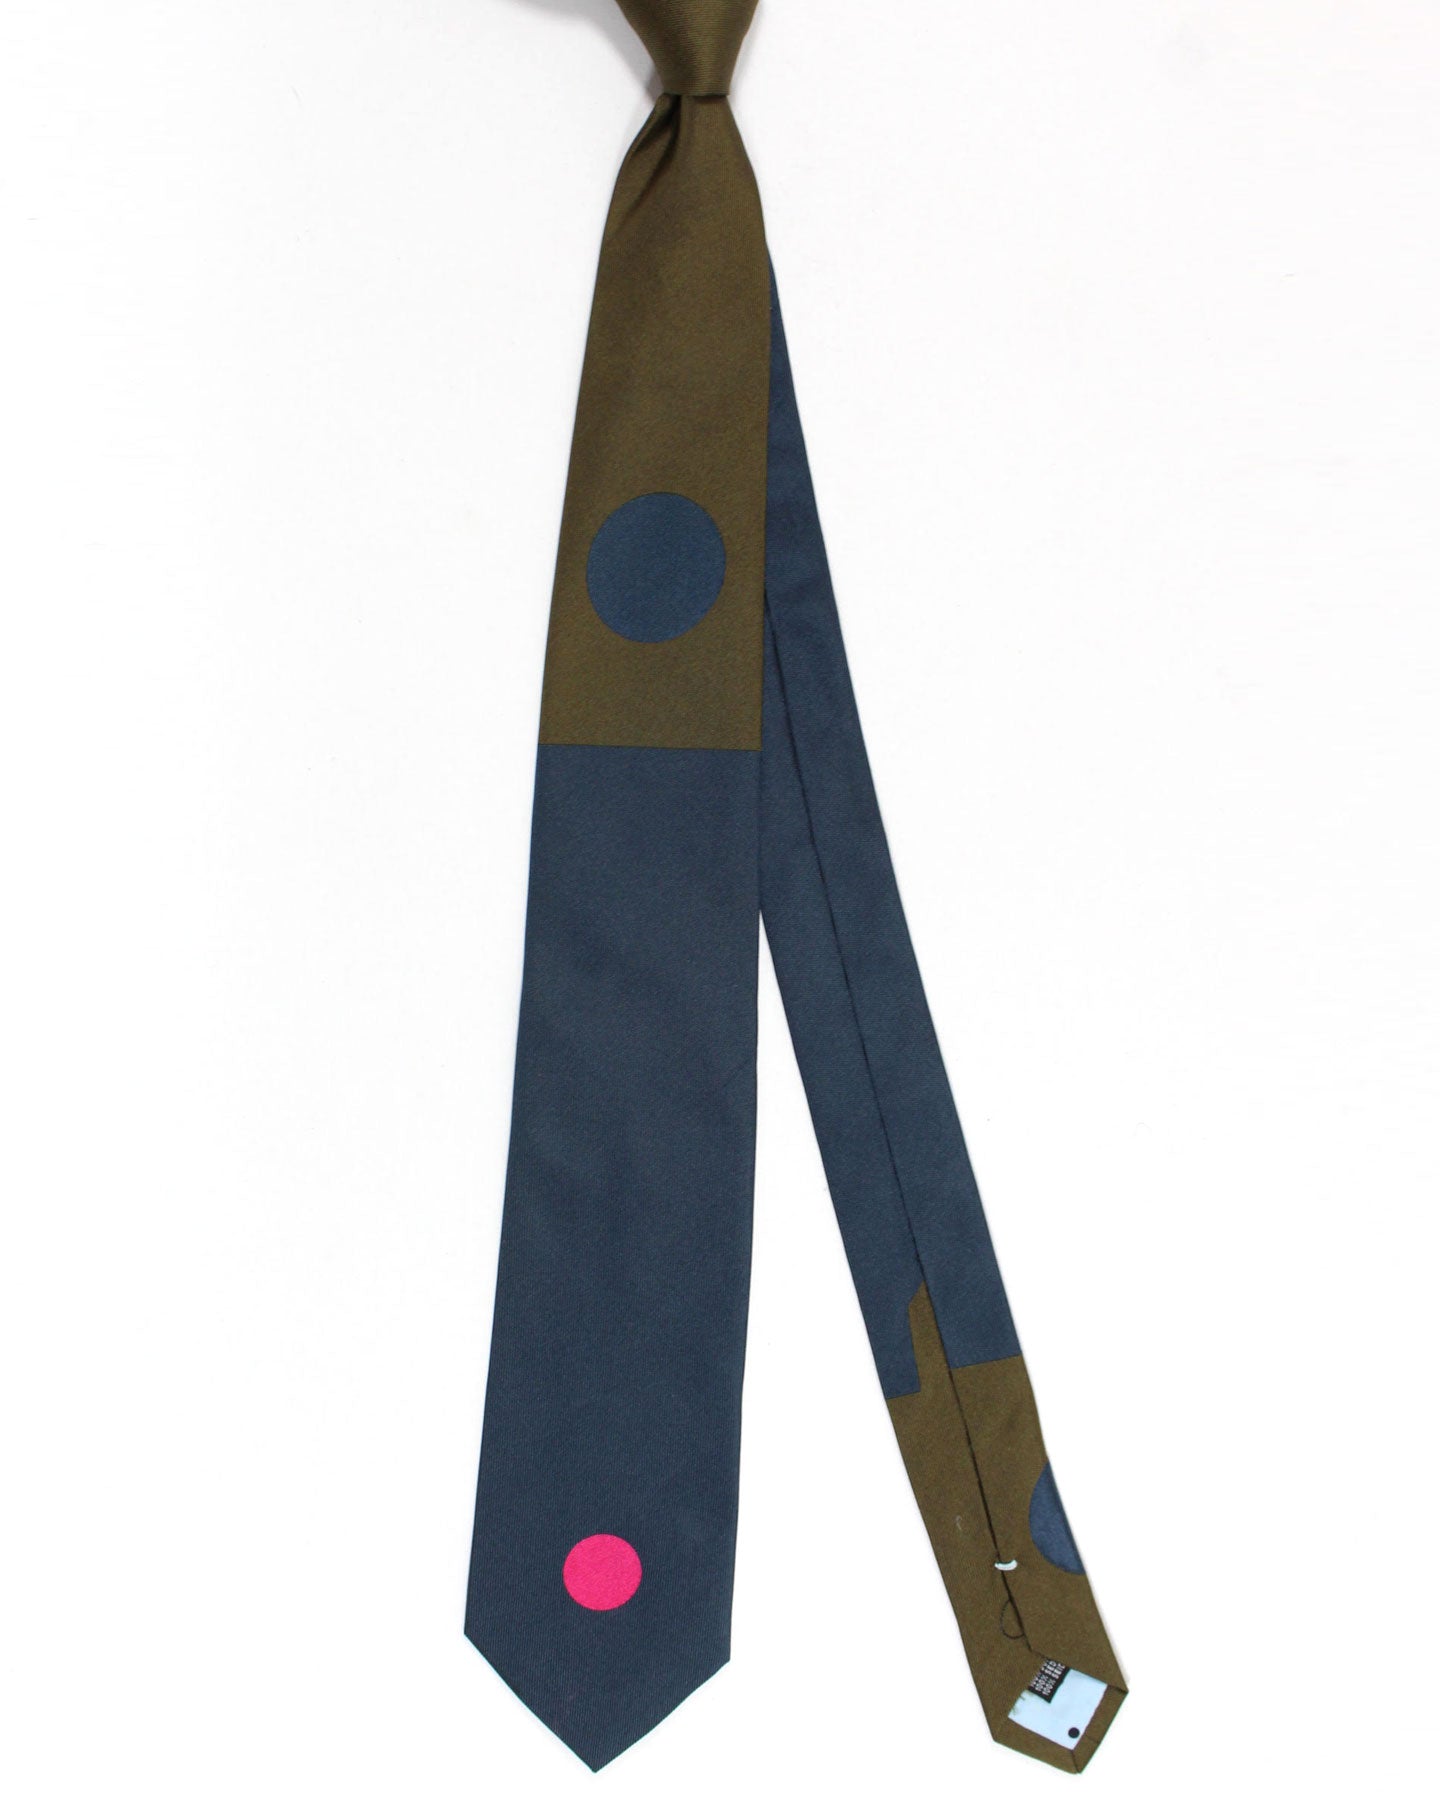 Gene Meyer Silk Designer Tie Dark Blue Brown Pink Large Dots - Hand Made in Italy